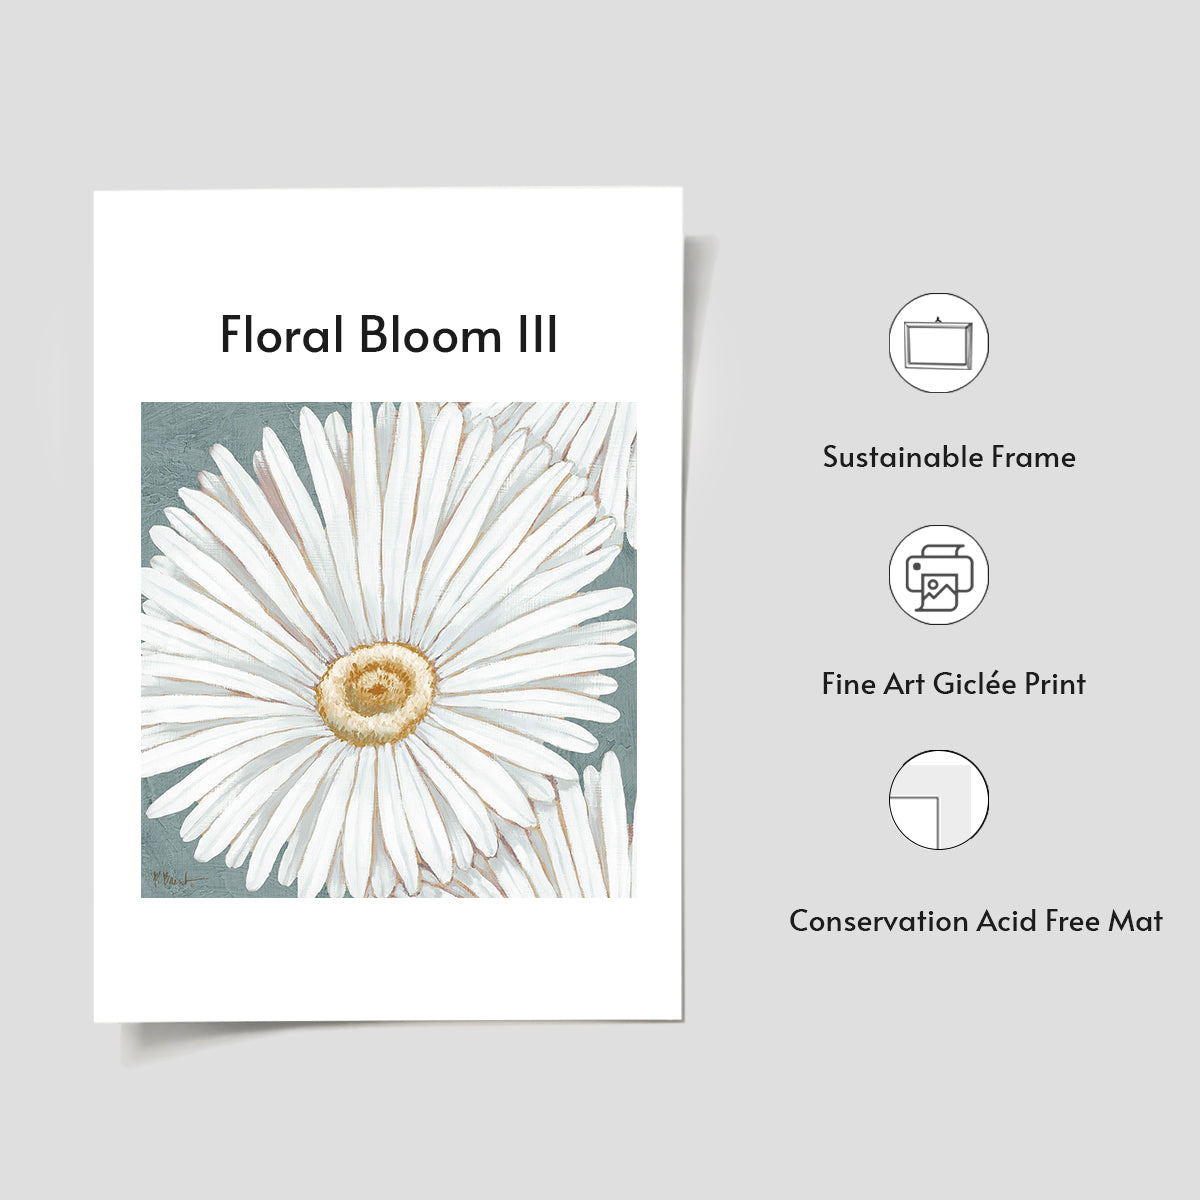 Floral Bloom III